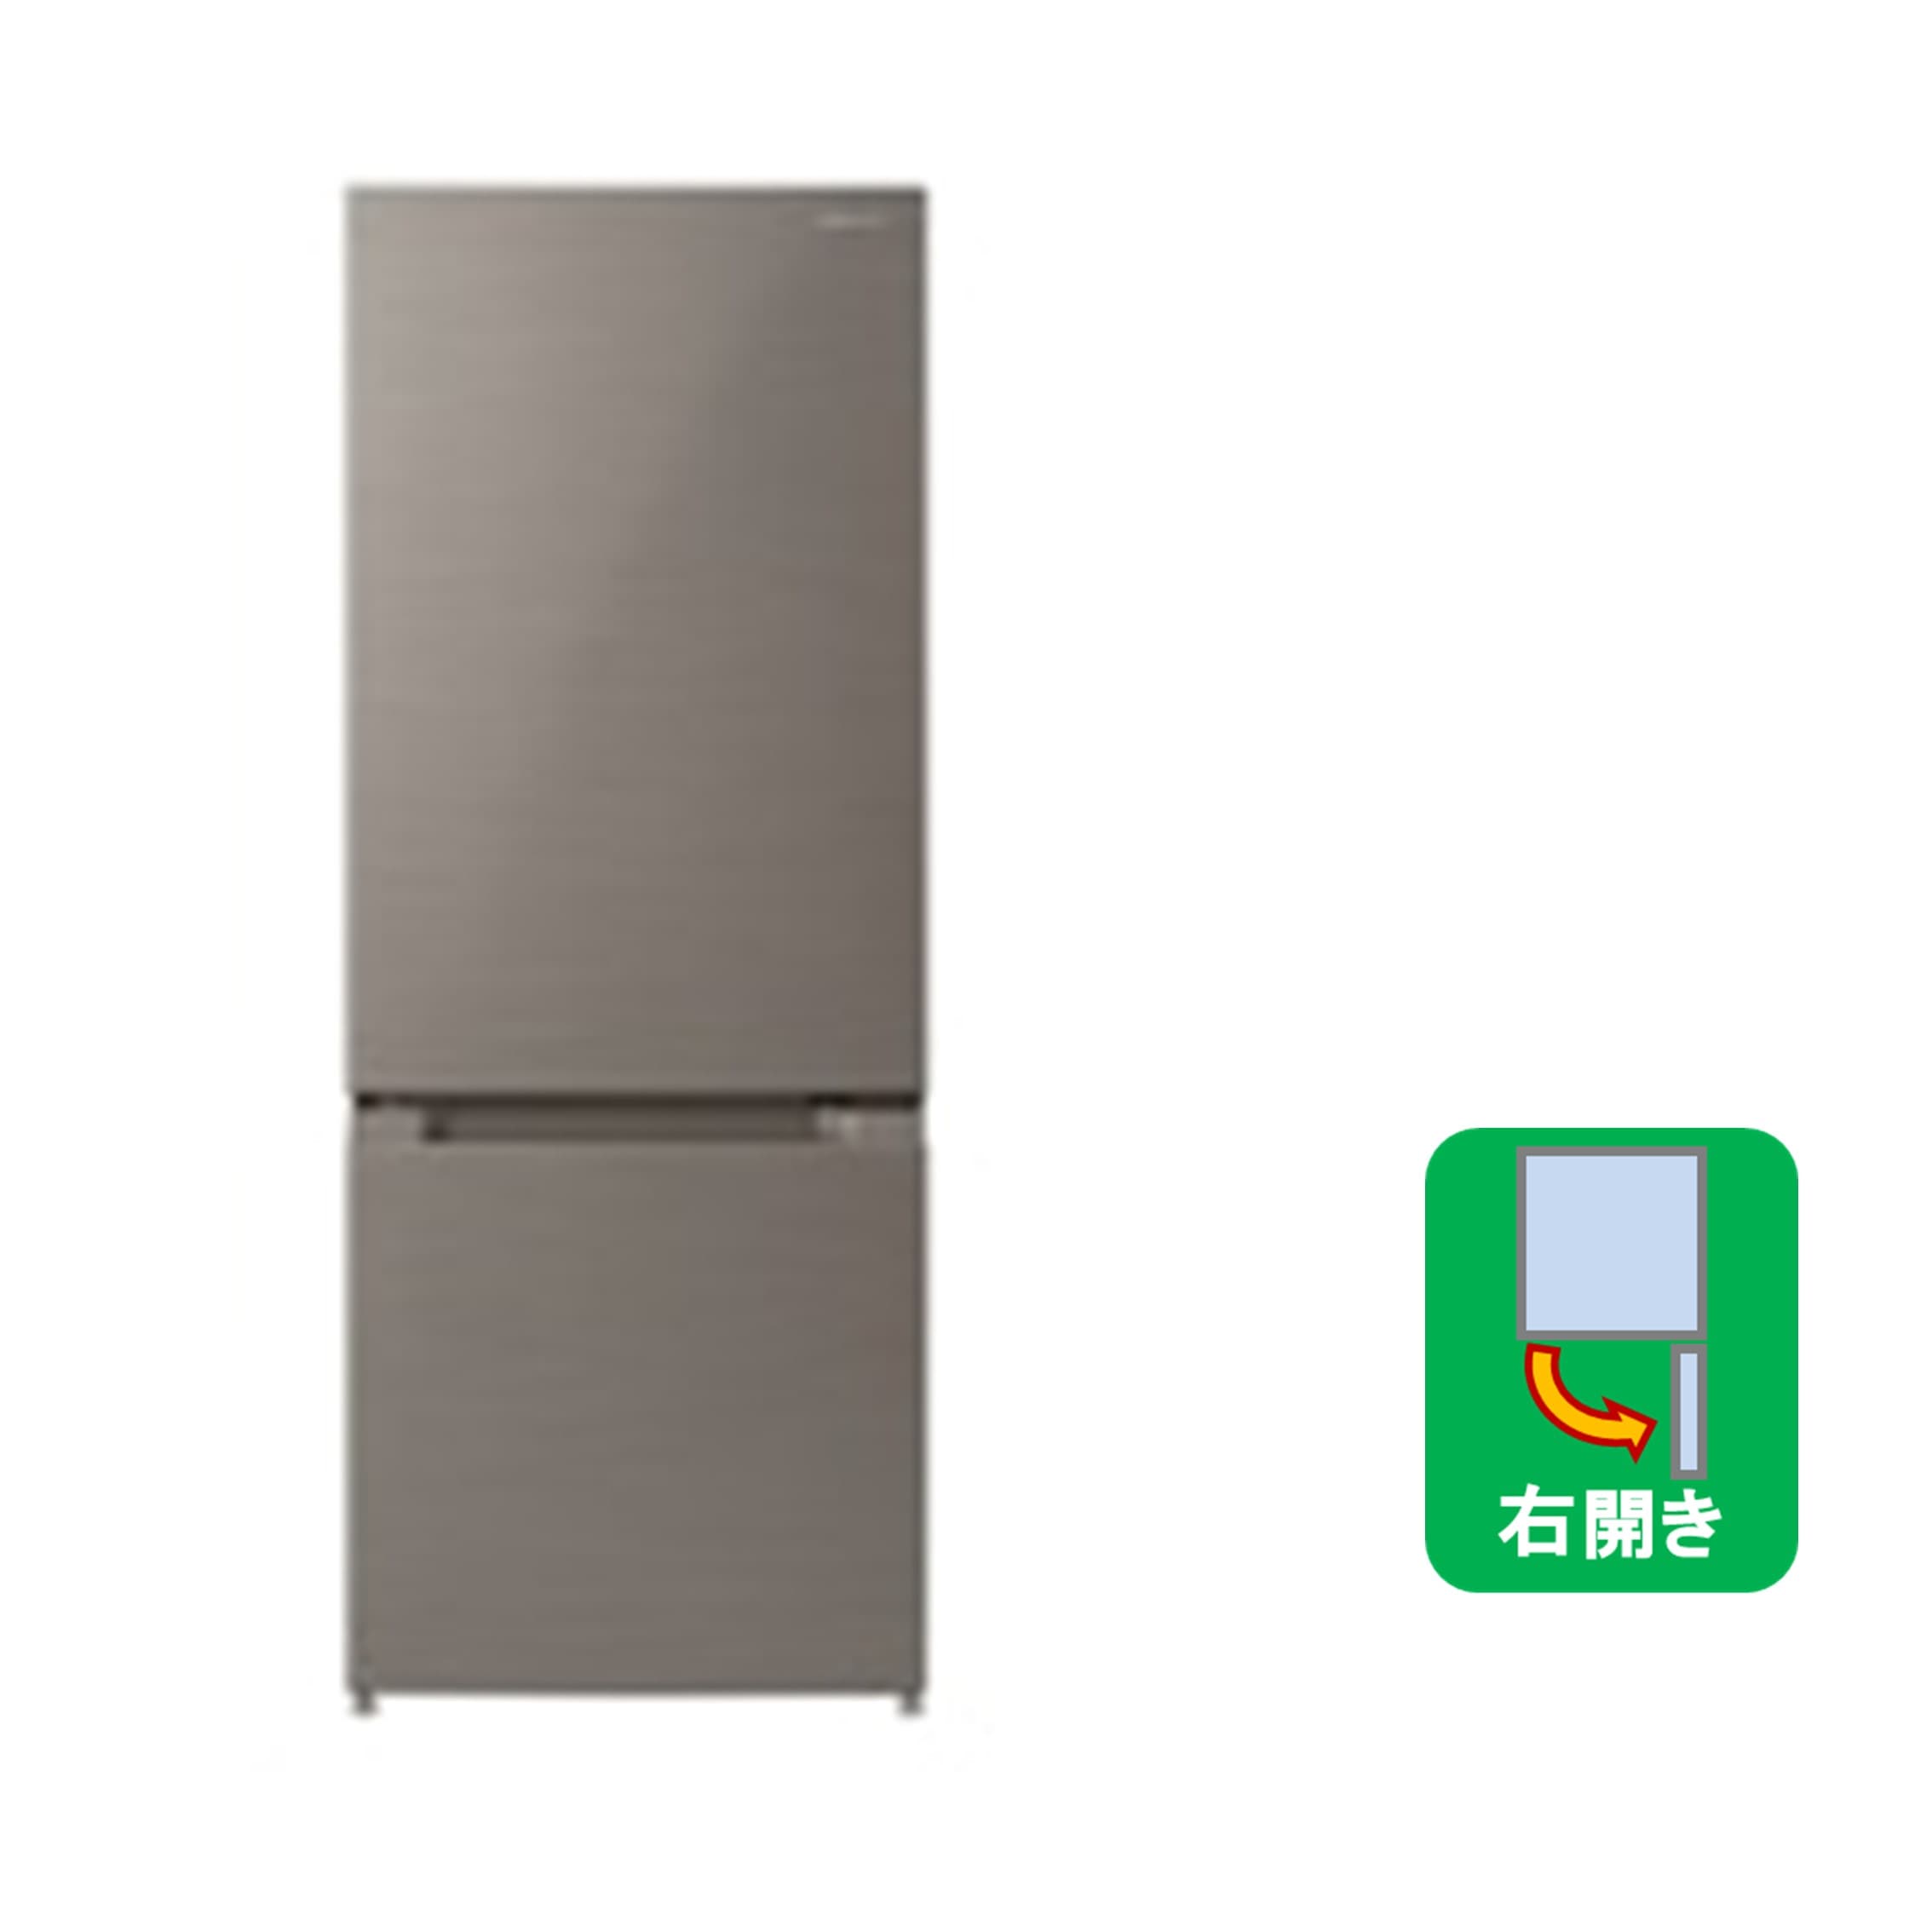 キッチン家電/冷蔵庫(並び順：商品名)/日立の家電品オンラインストア